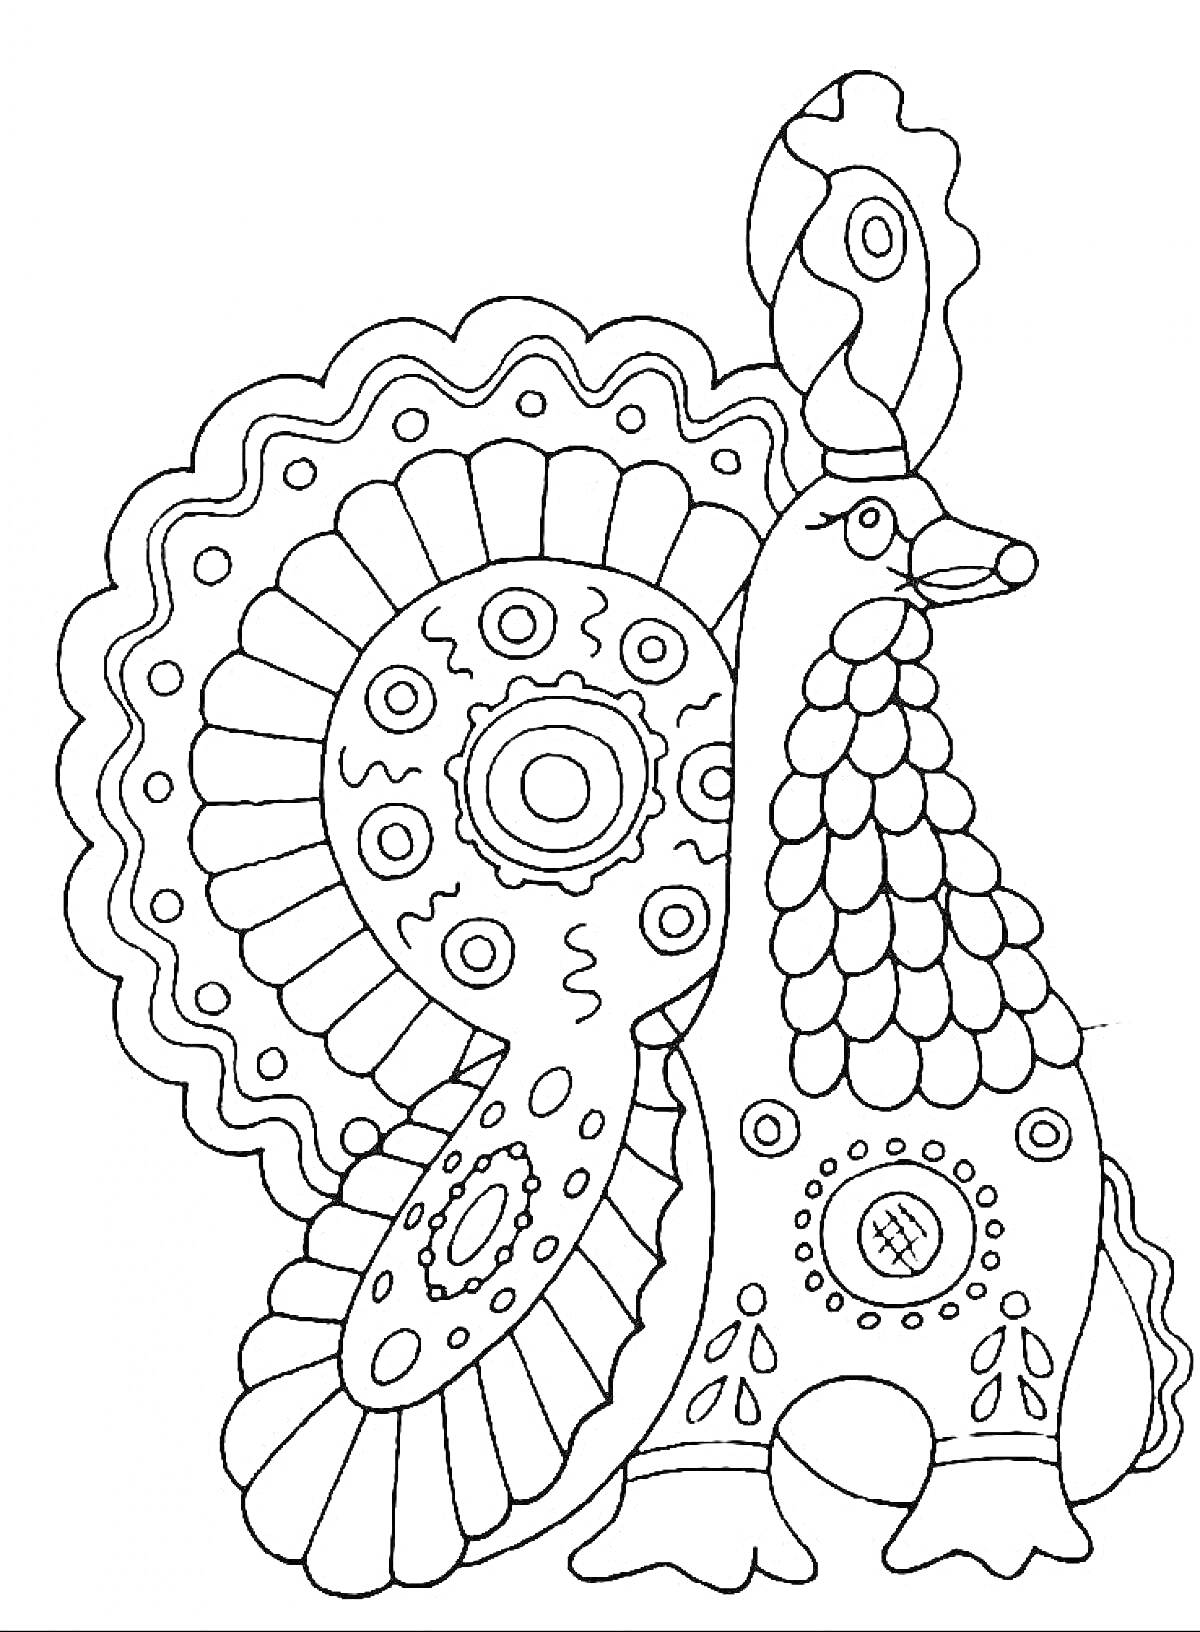 Дымковская игрушка - петух с узором из кругов и полосок, с гребешком и хвостом